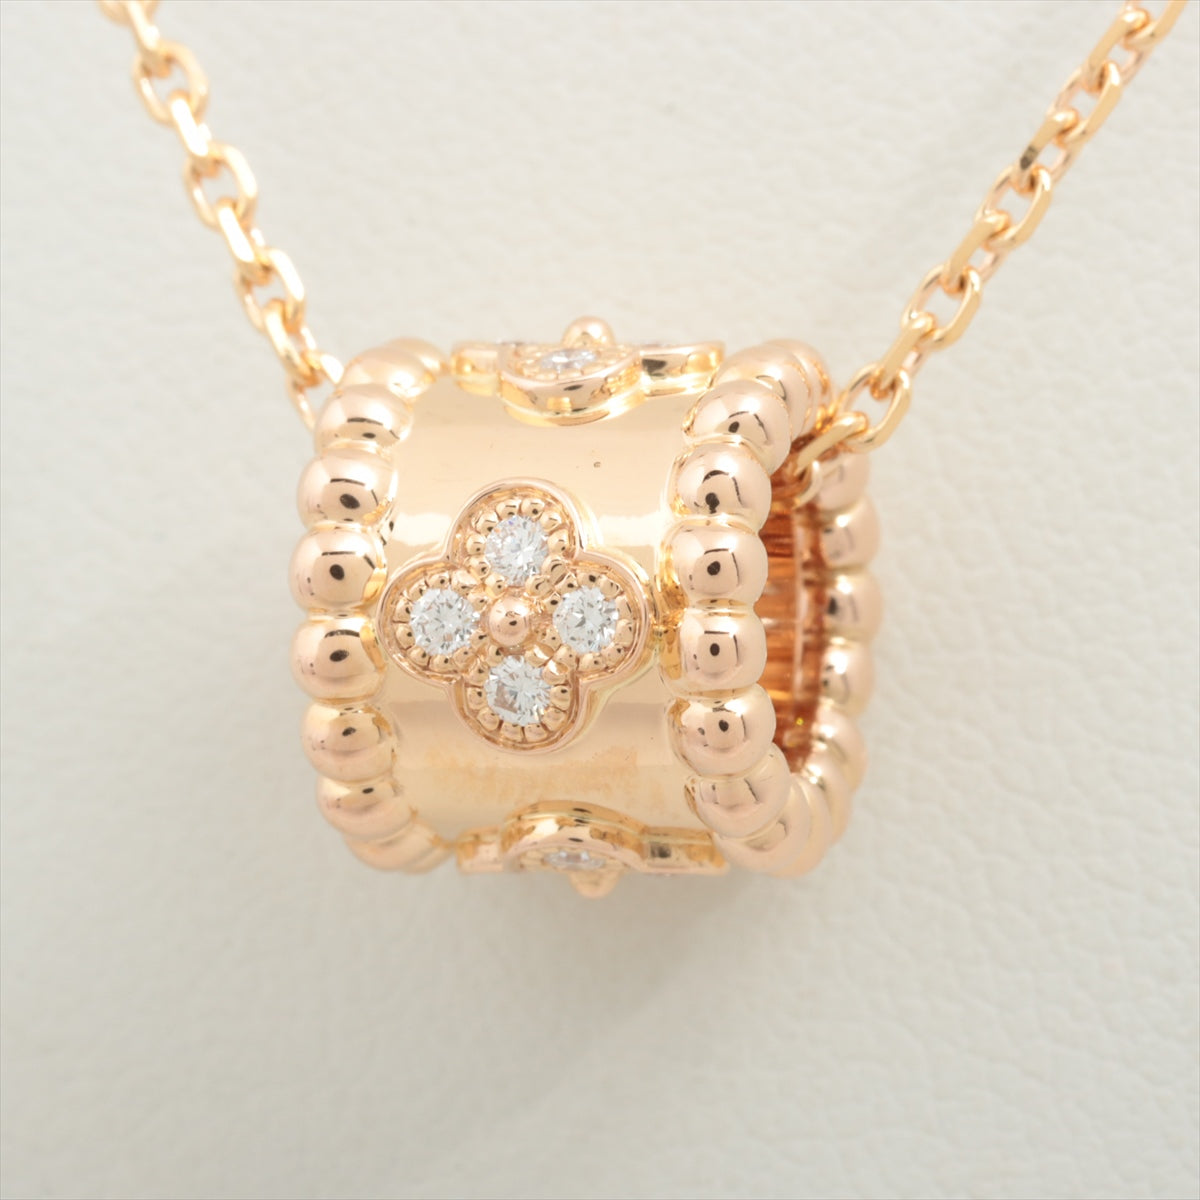 Van Cleef & Arpels PERRELET Clover diamond Necklace 750(PG) 6.4g